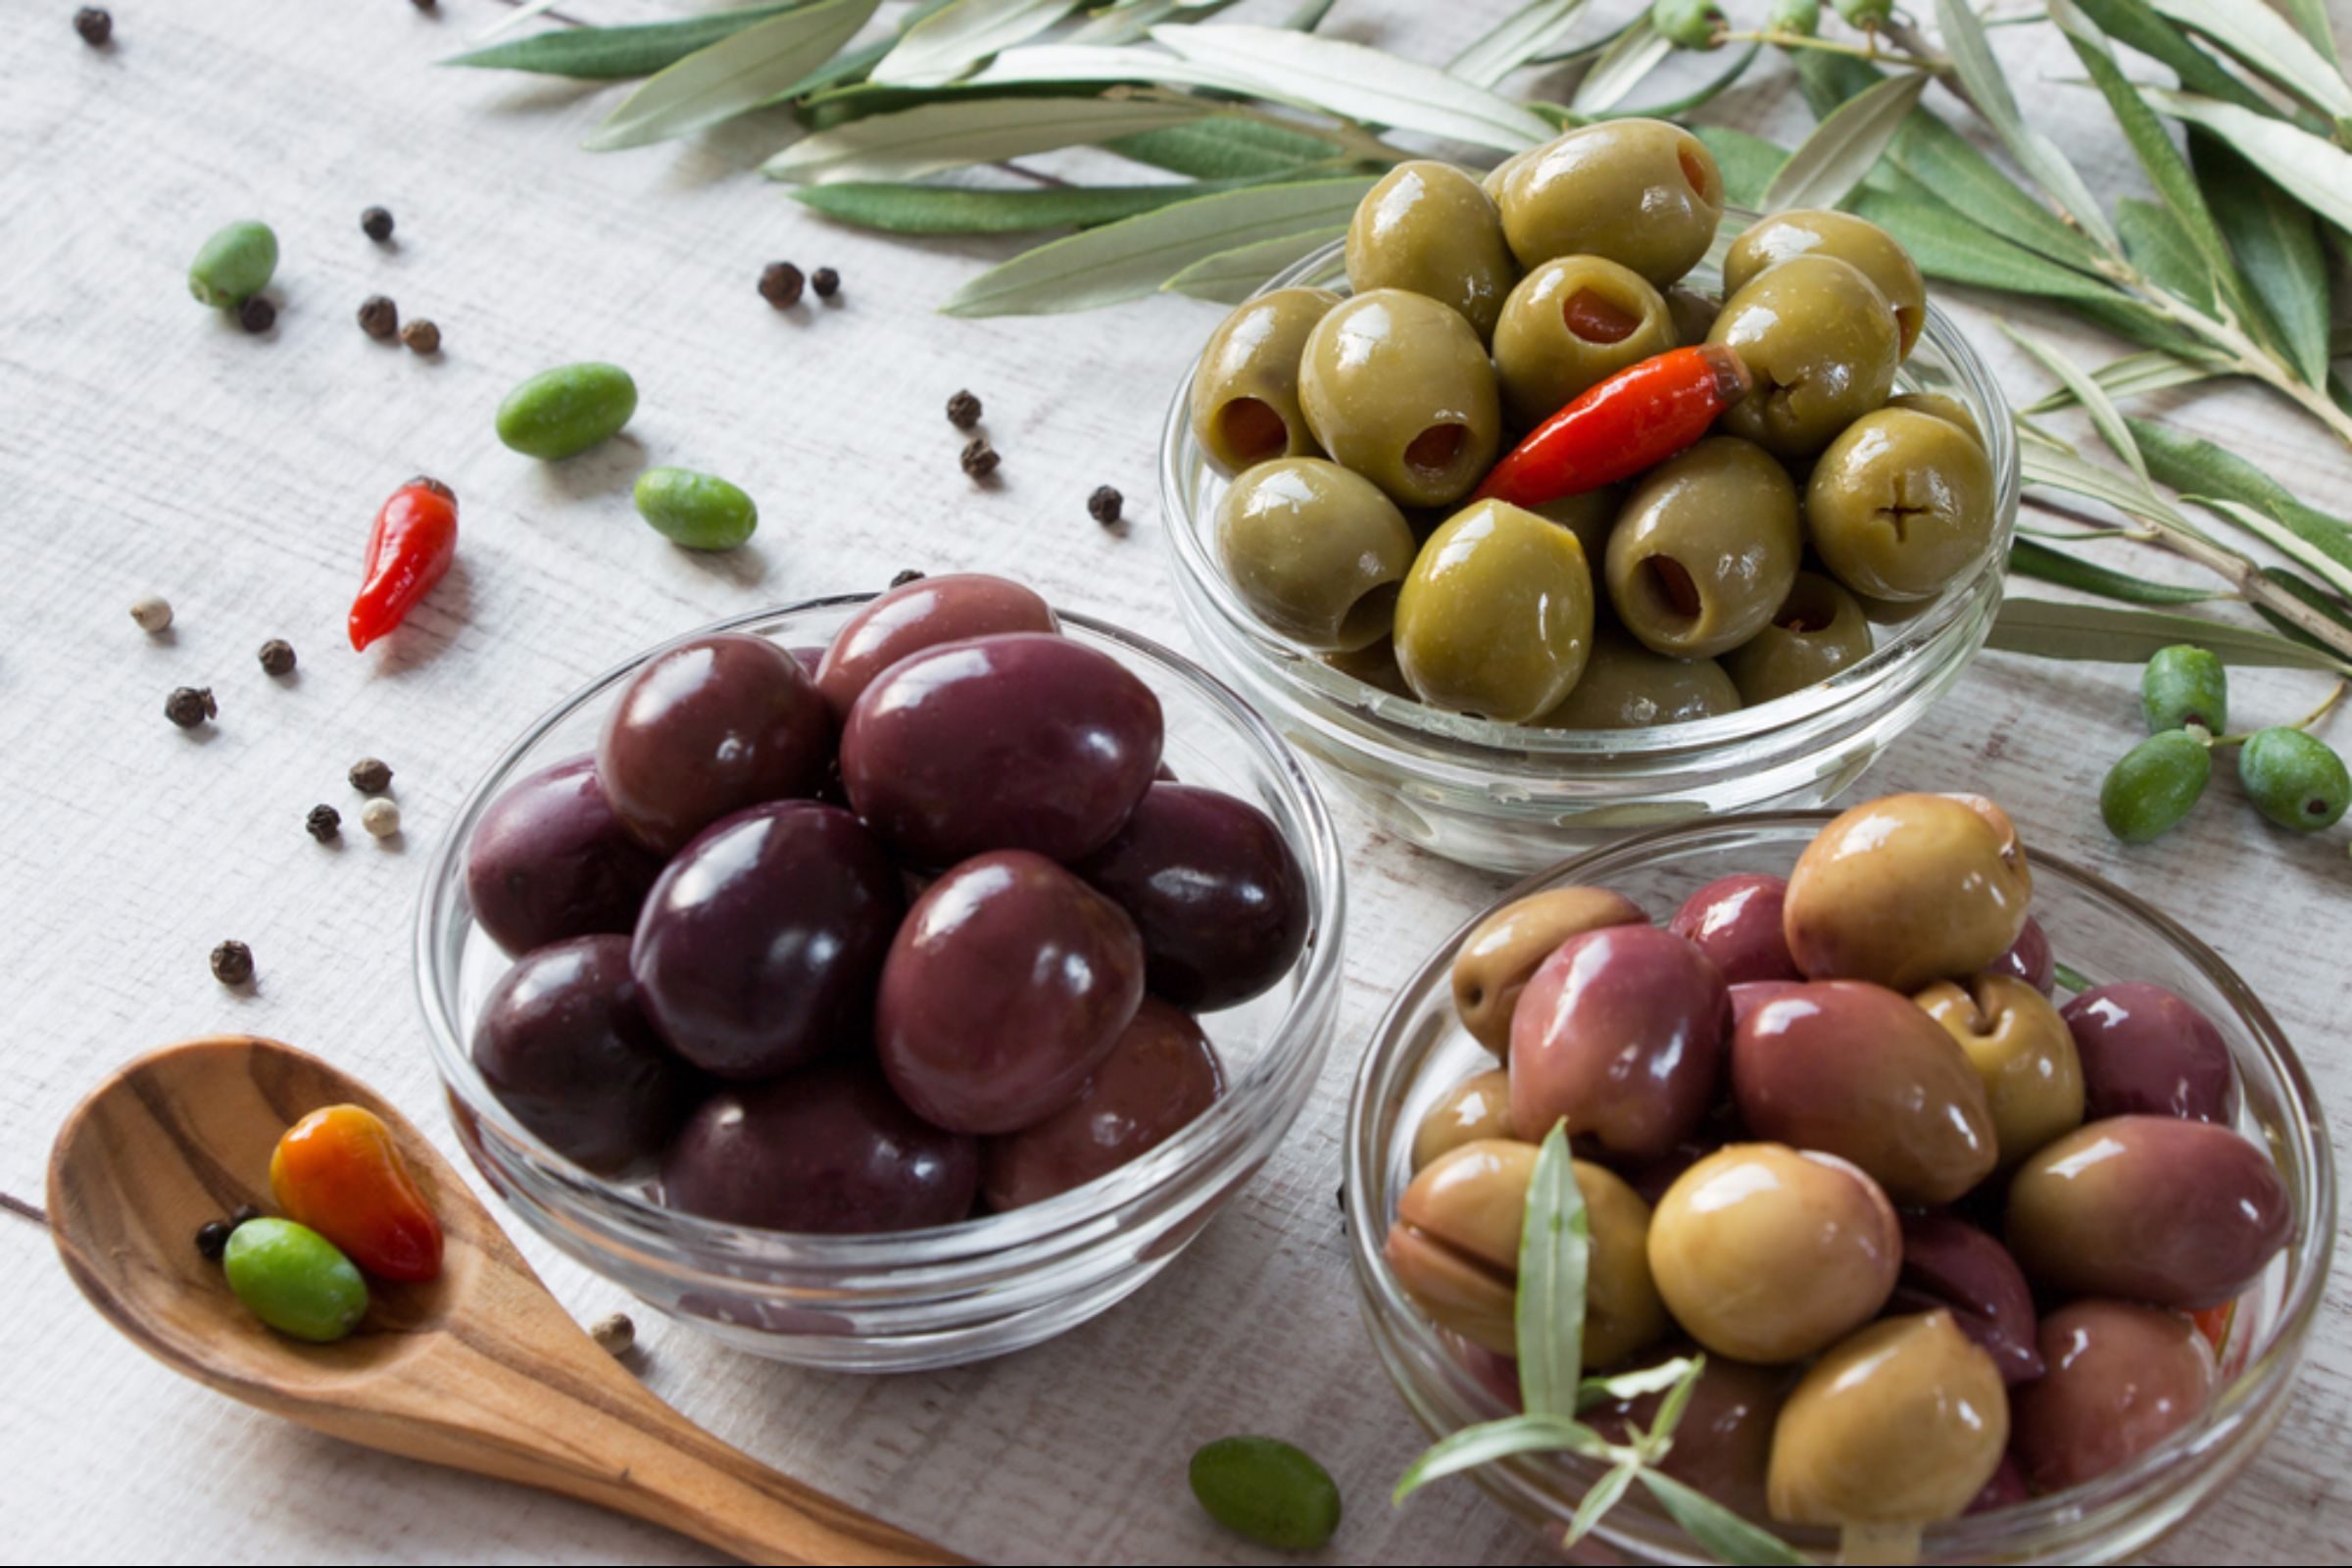 Kalamata and green olives